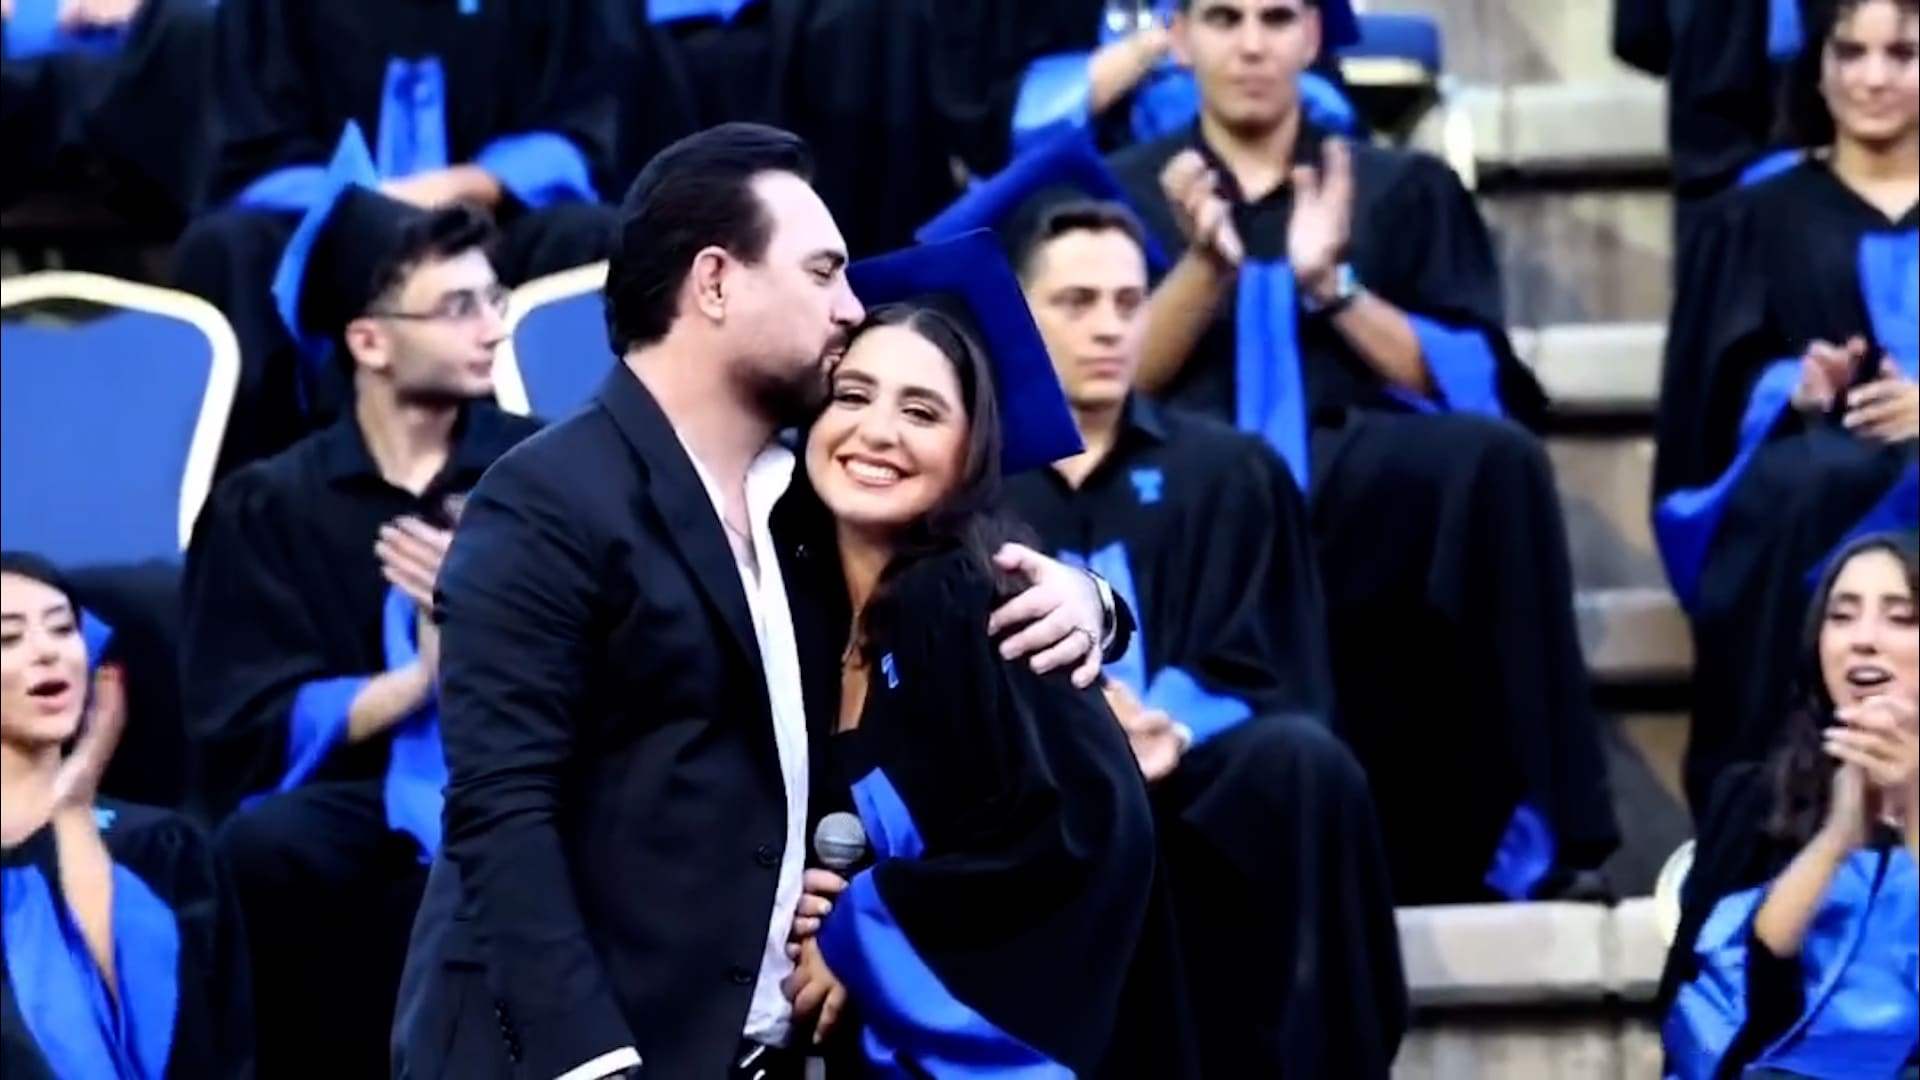 بعد صدور نتائج الامتحانات الرسمية... هكذا احتفل وائل جسار بنجاح ابنته! (صورة)